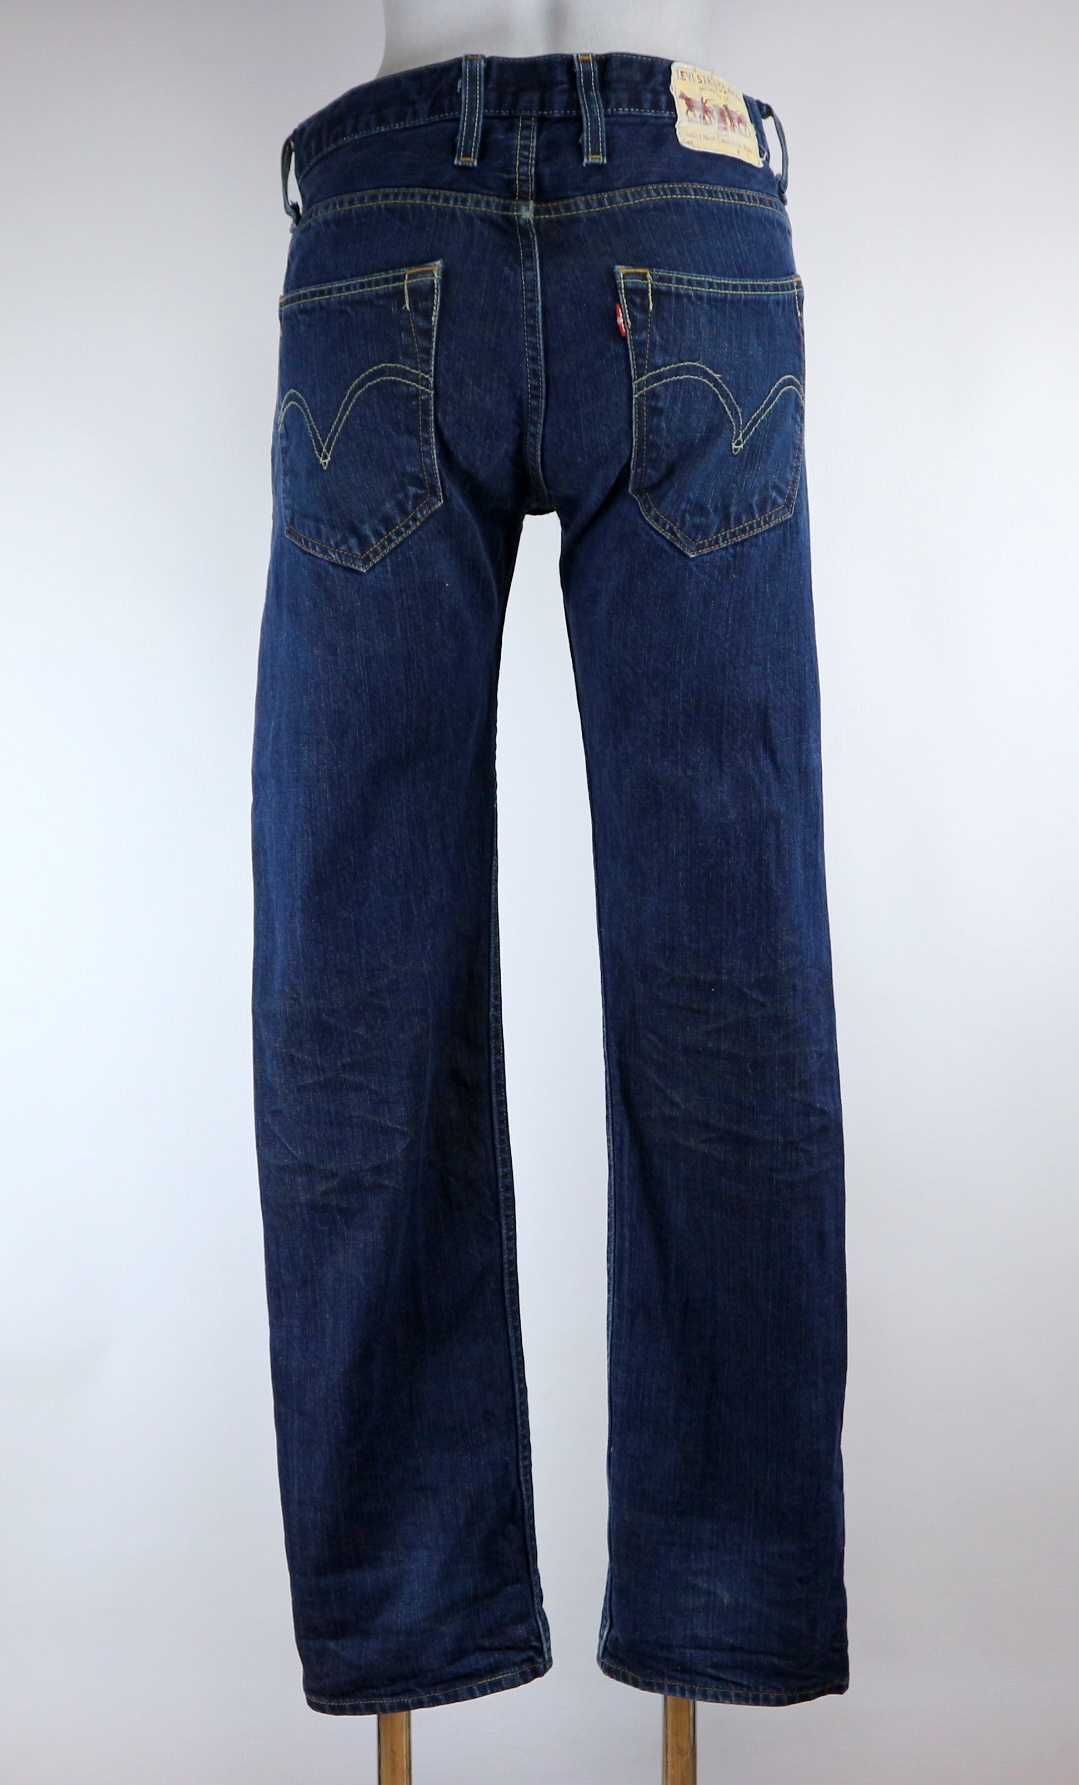 Levis 504 spodnie jeansy W30 L32 pas 2 x 39 cm